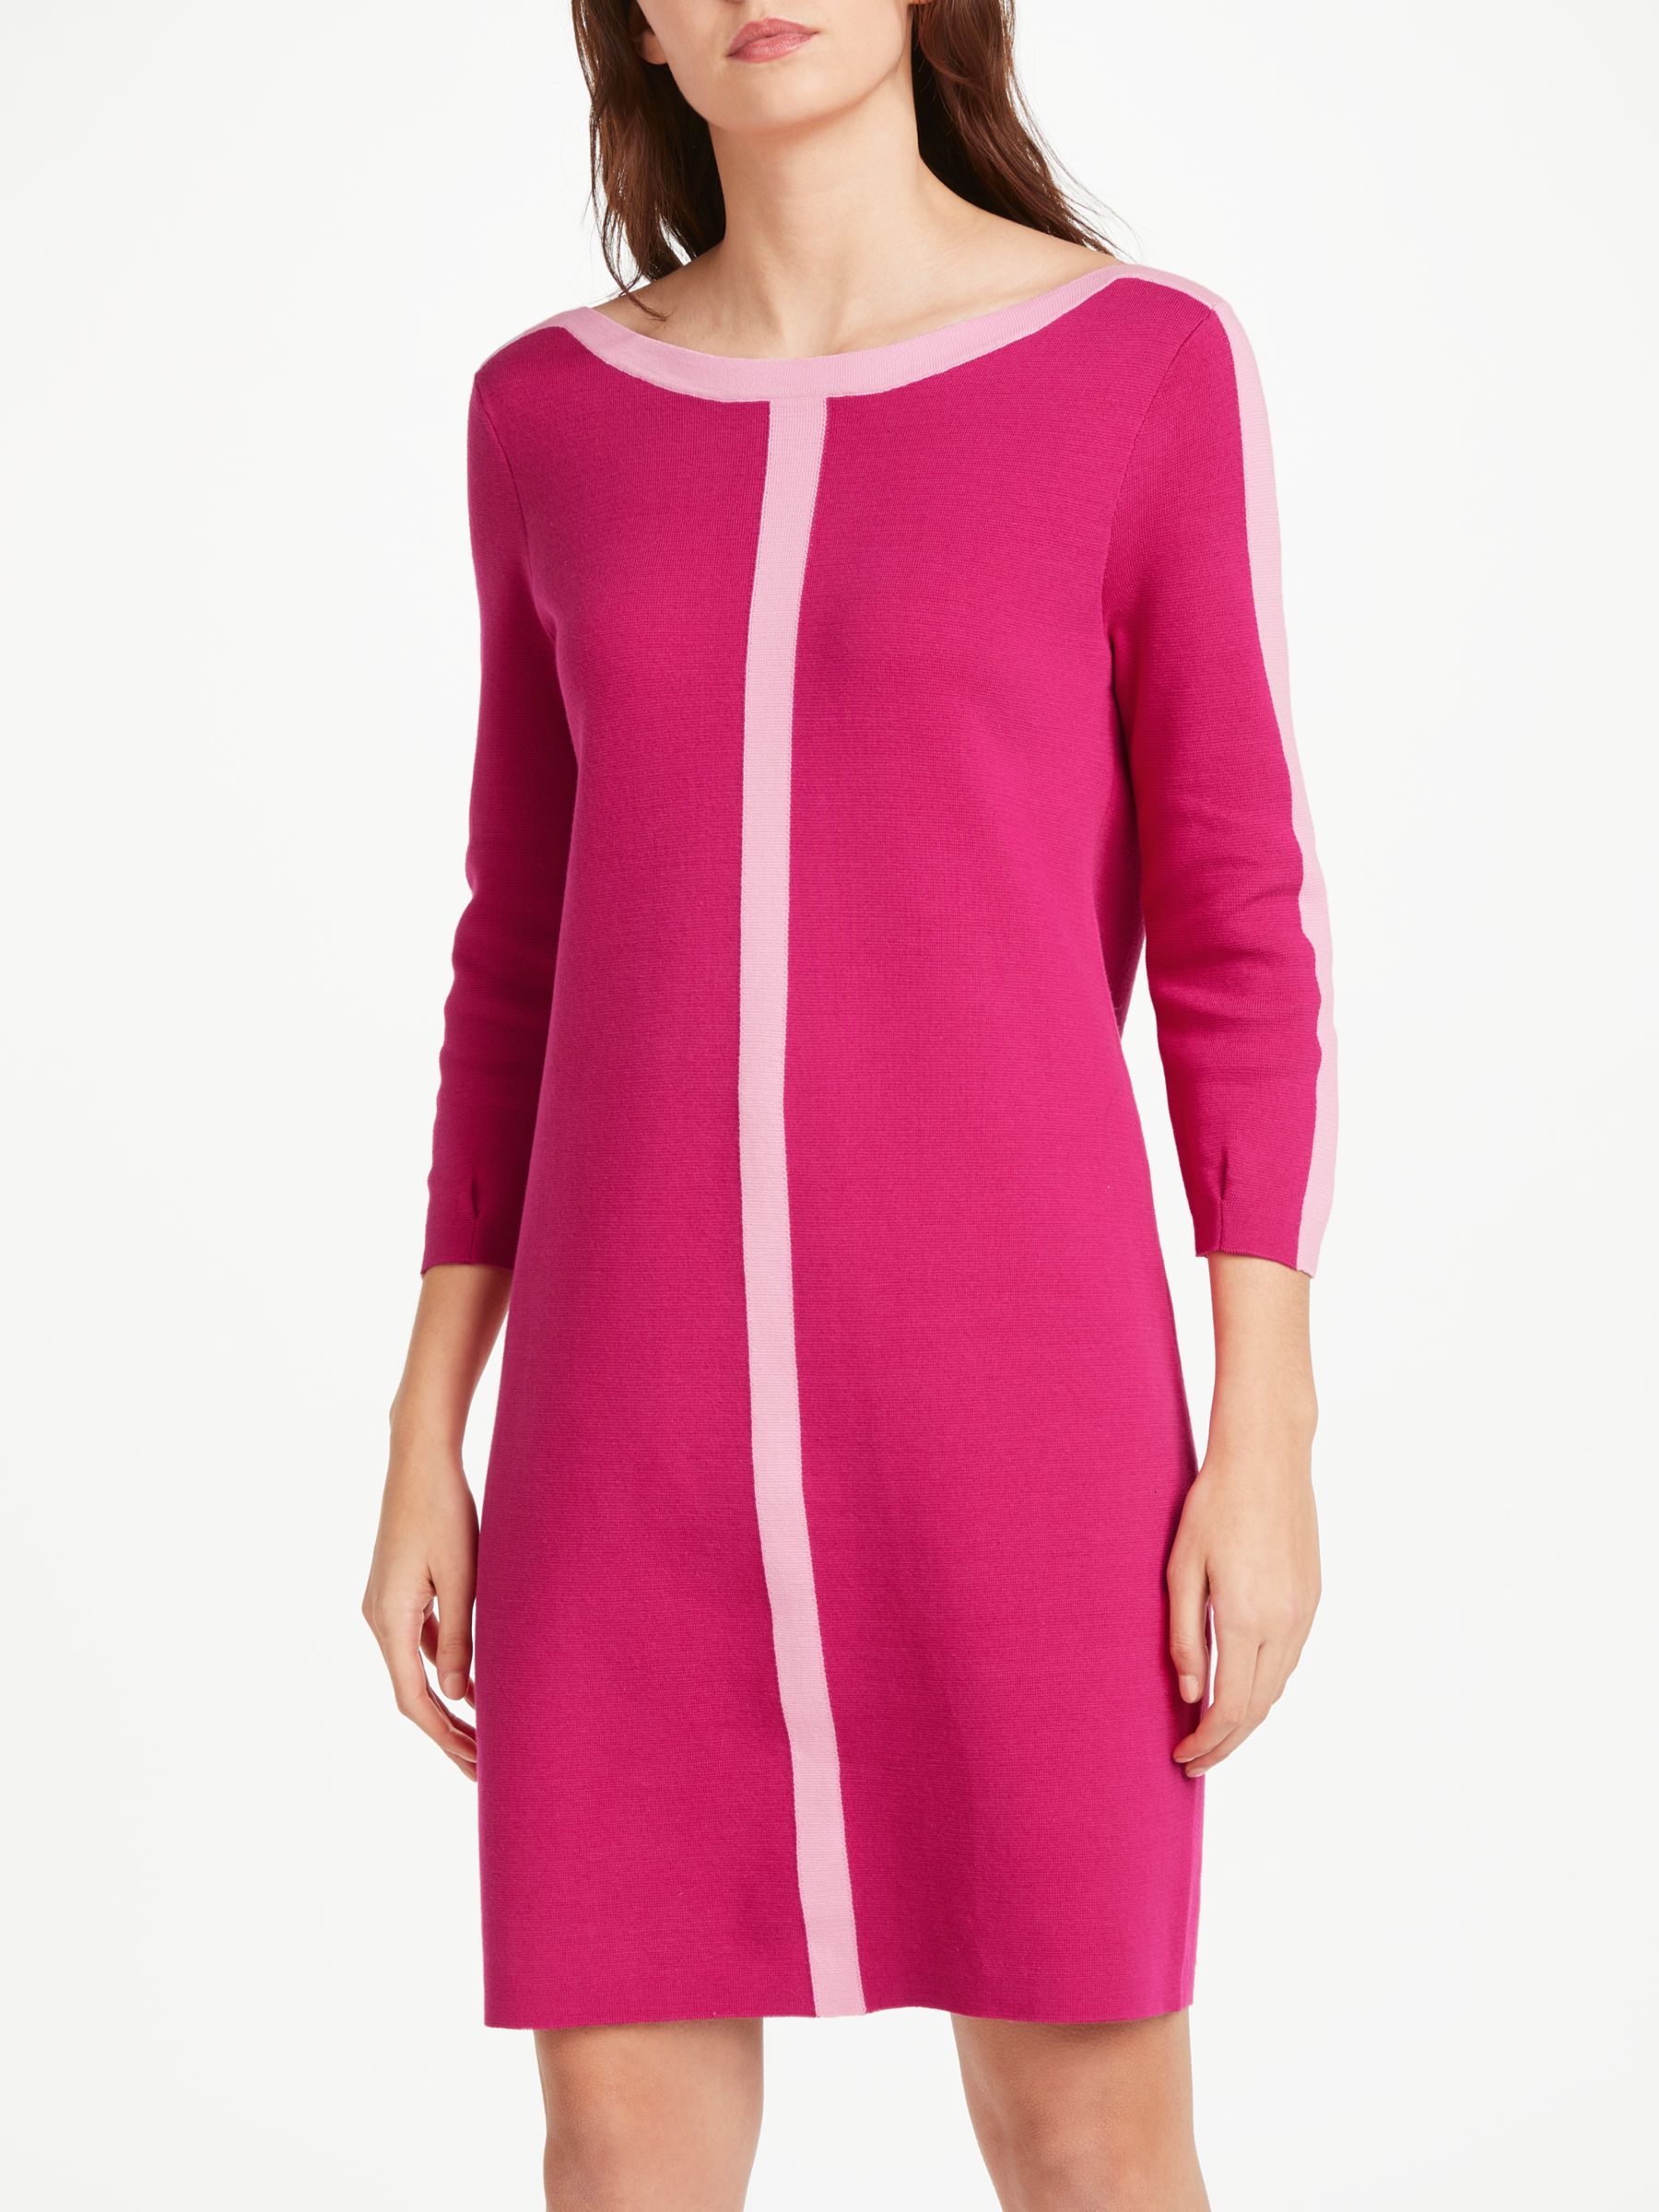 fuschia pink shift dress